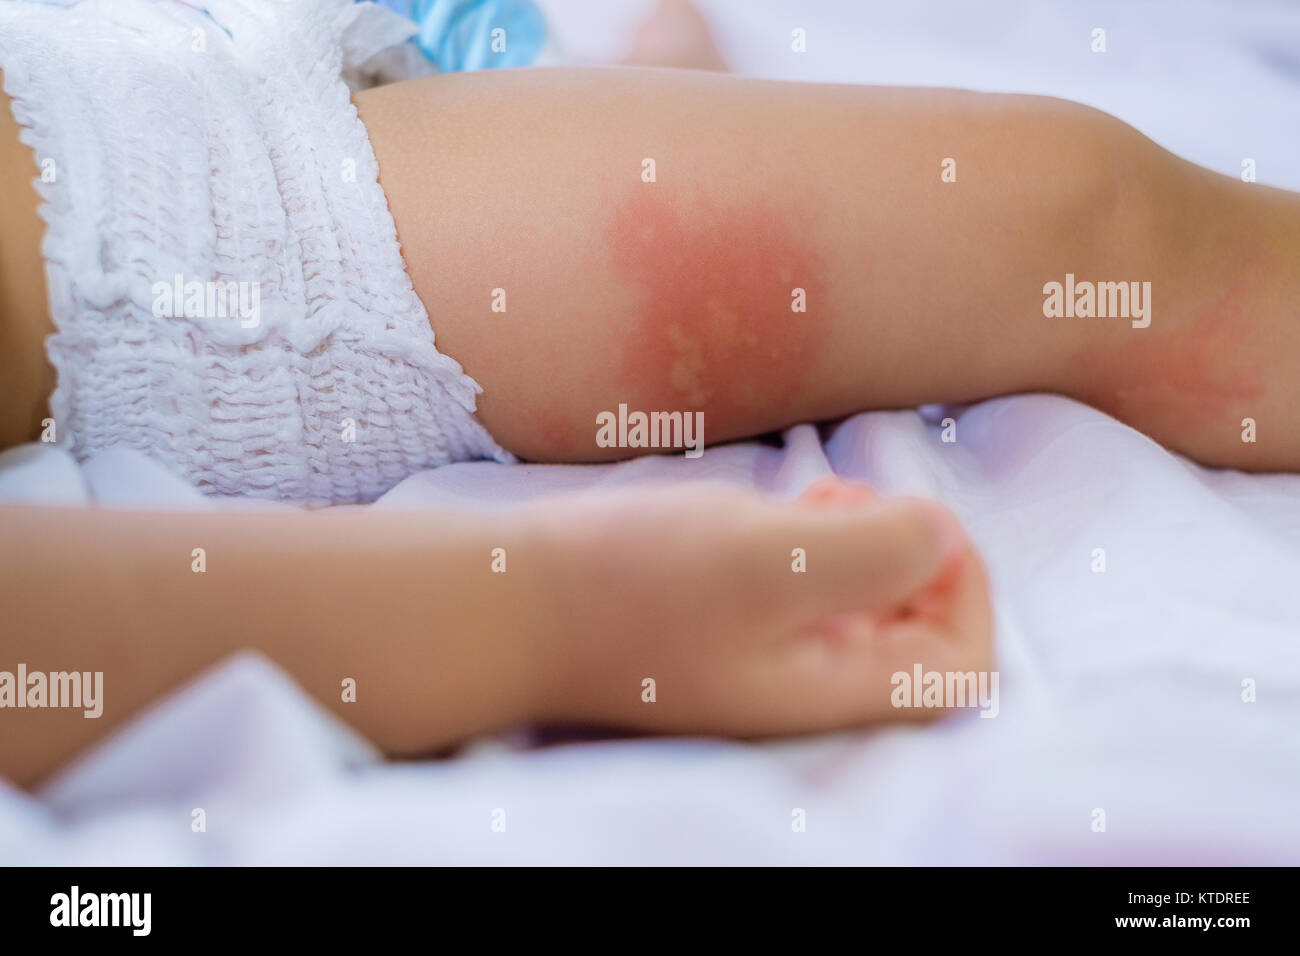 Gamba di dormire bambino piccolo con arrossamento della pelle, che soffrono di allergie alimentari, Baby è la gamba coperta da eczema. allergy baby pelle atopica cibo. Foto Stock